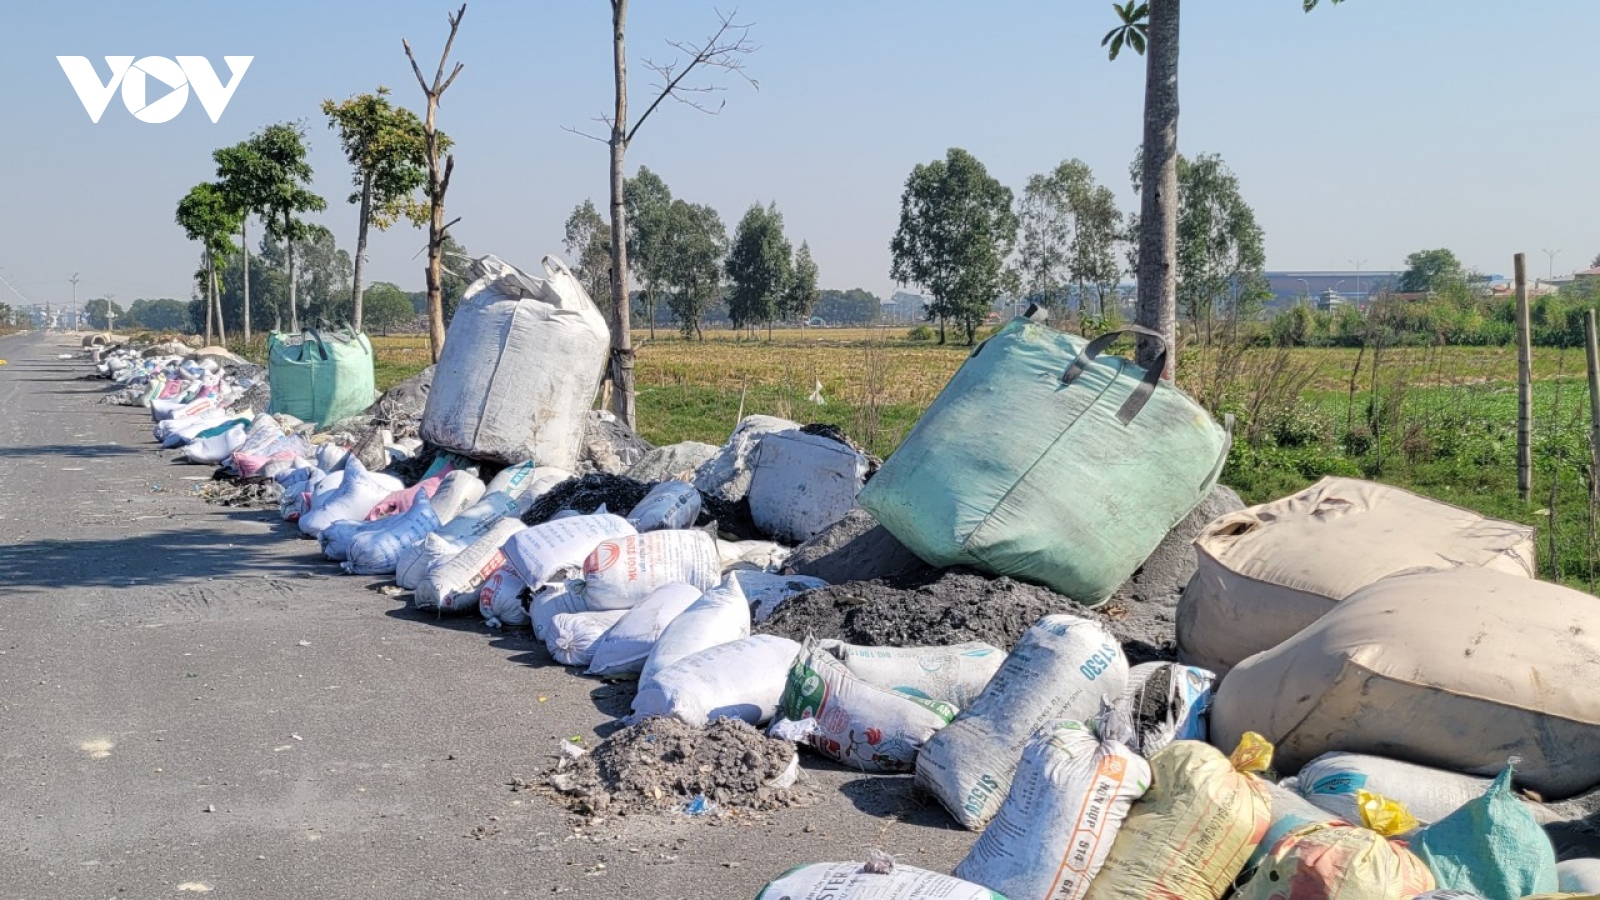 Vi phạm xử lý chất thải nguy hại, doanh nghiệp Bắc Ninh bị xử phạt 400 triệu đồng